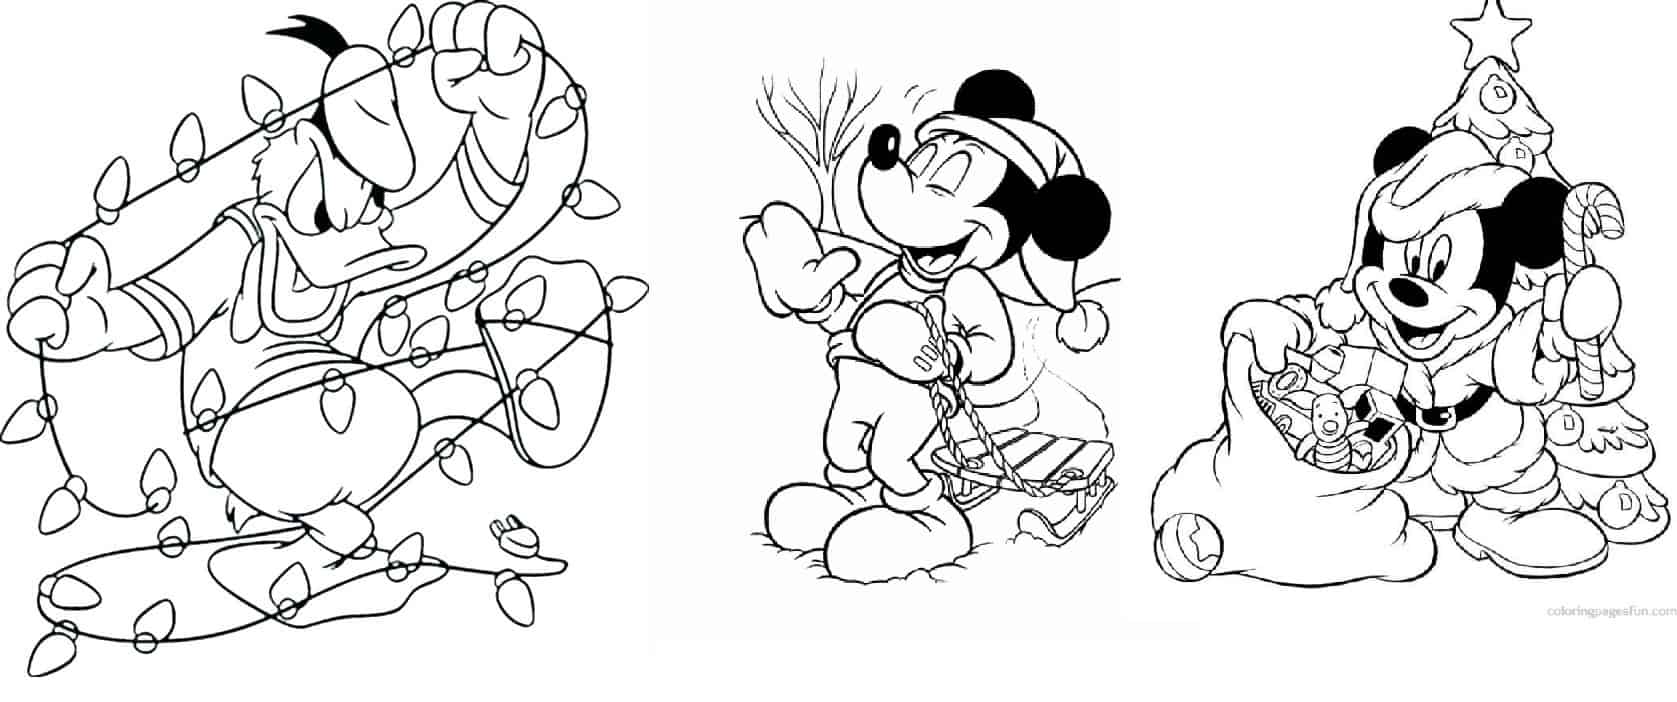 desenhos do Mickey para pintar